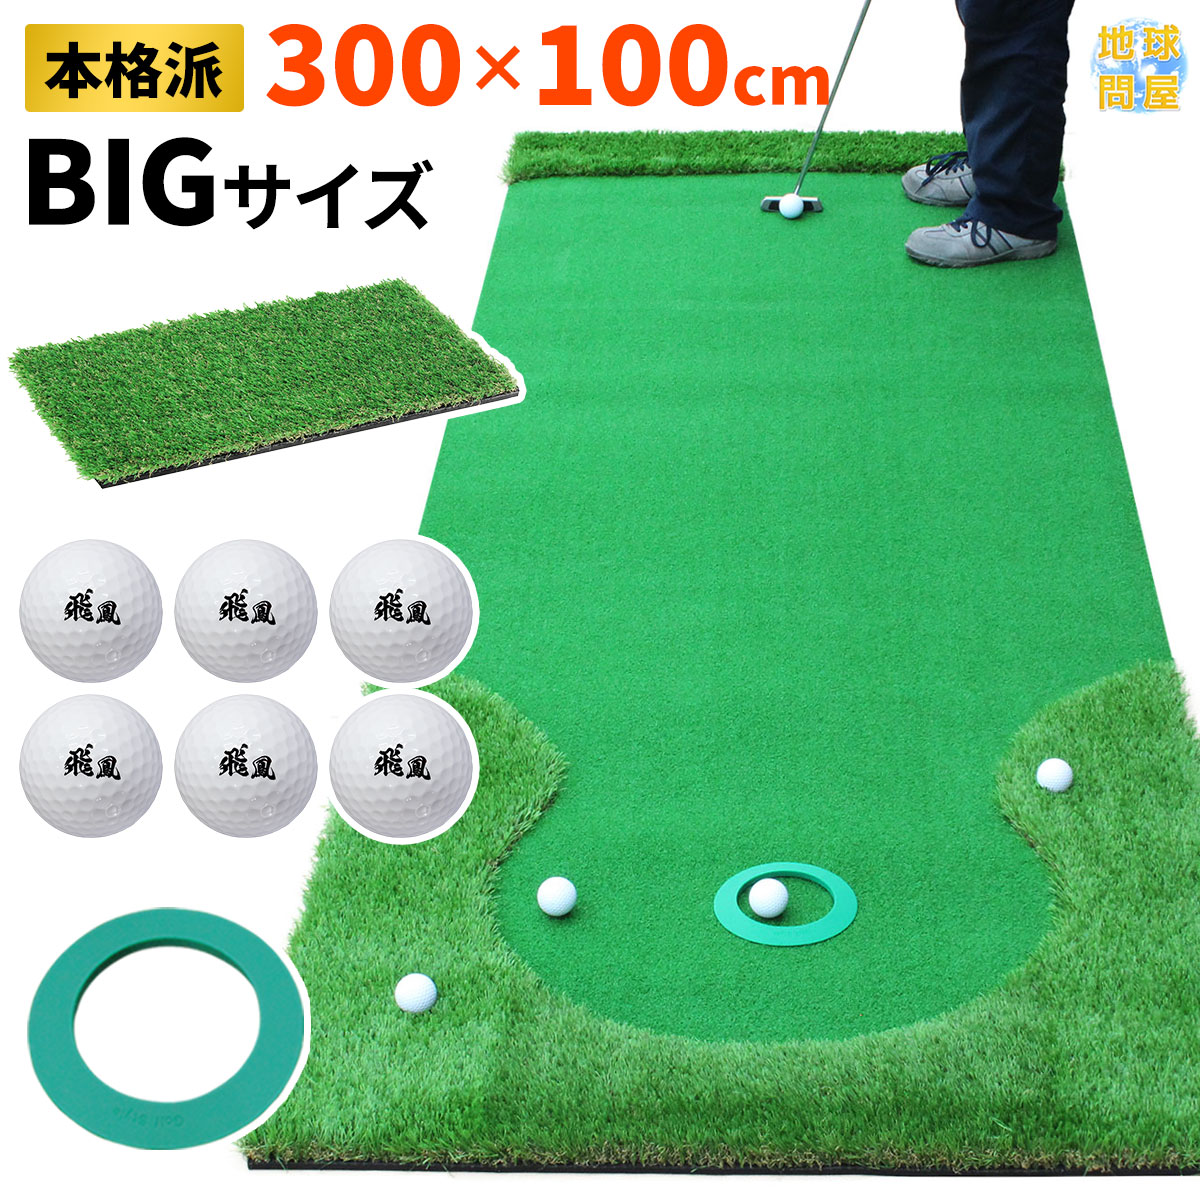 ゴルフ練習器具 パター練習マット パターマット 人工芝の人気商品 